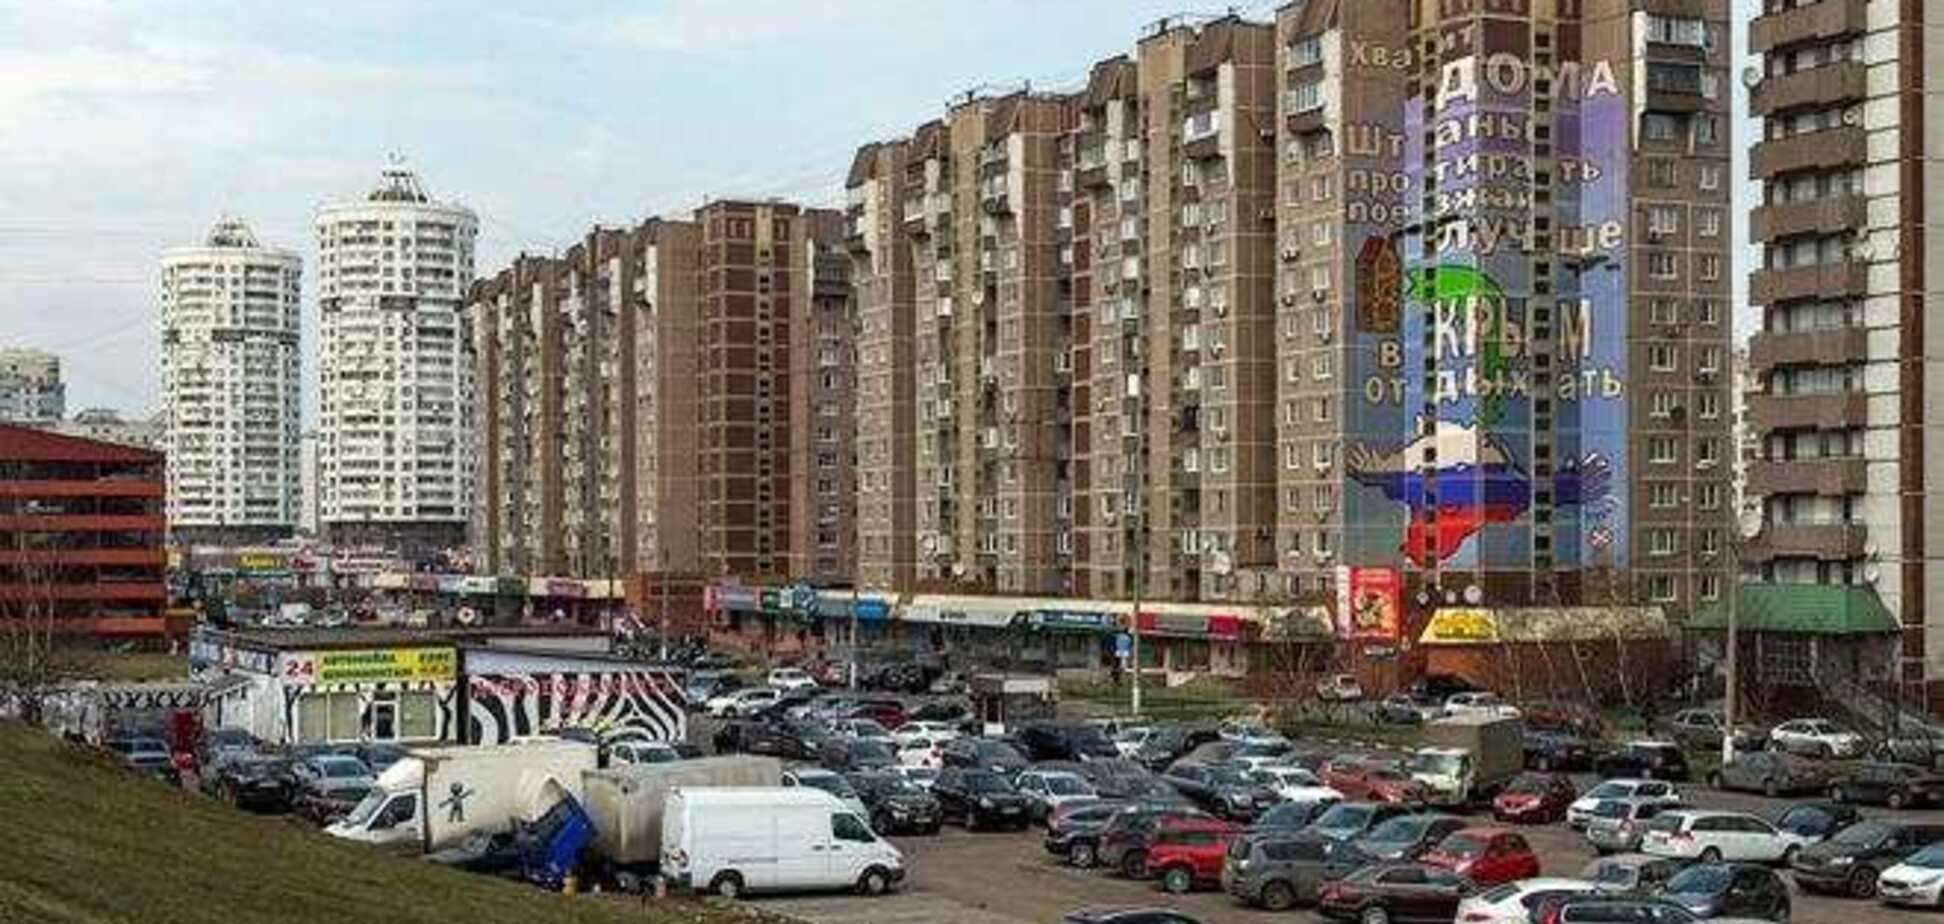 Граффити на доме Навального: хватит дома штаны протирать, поезжай лучше в Крым отдыхать